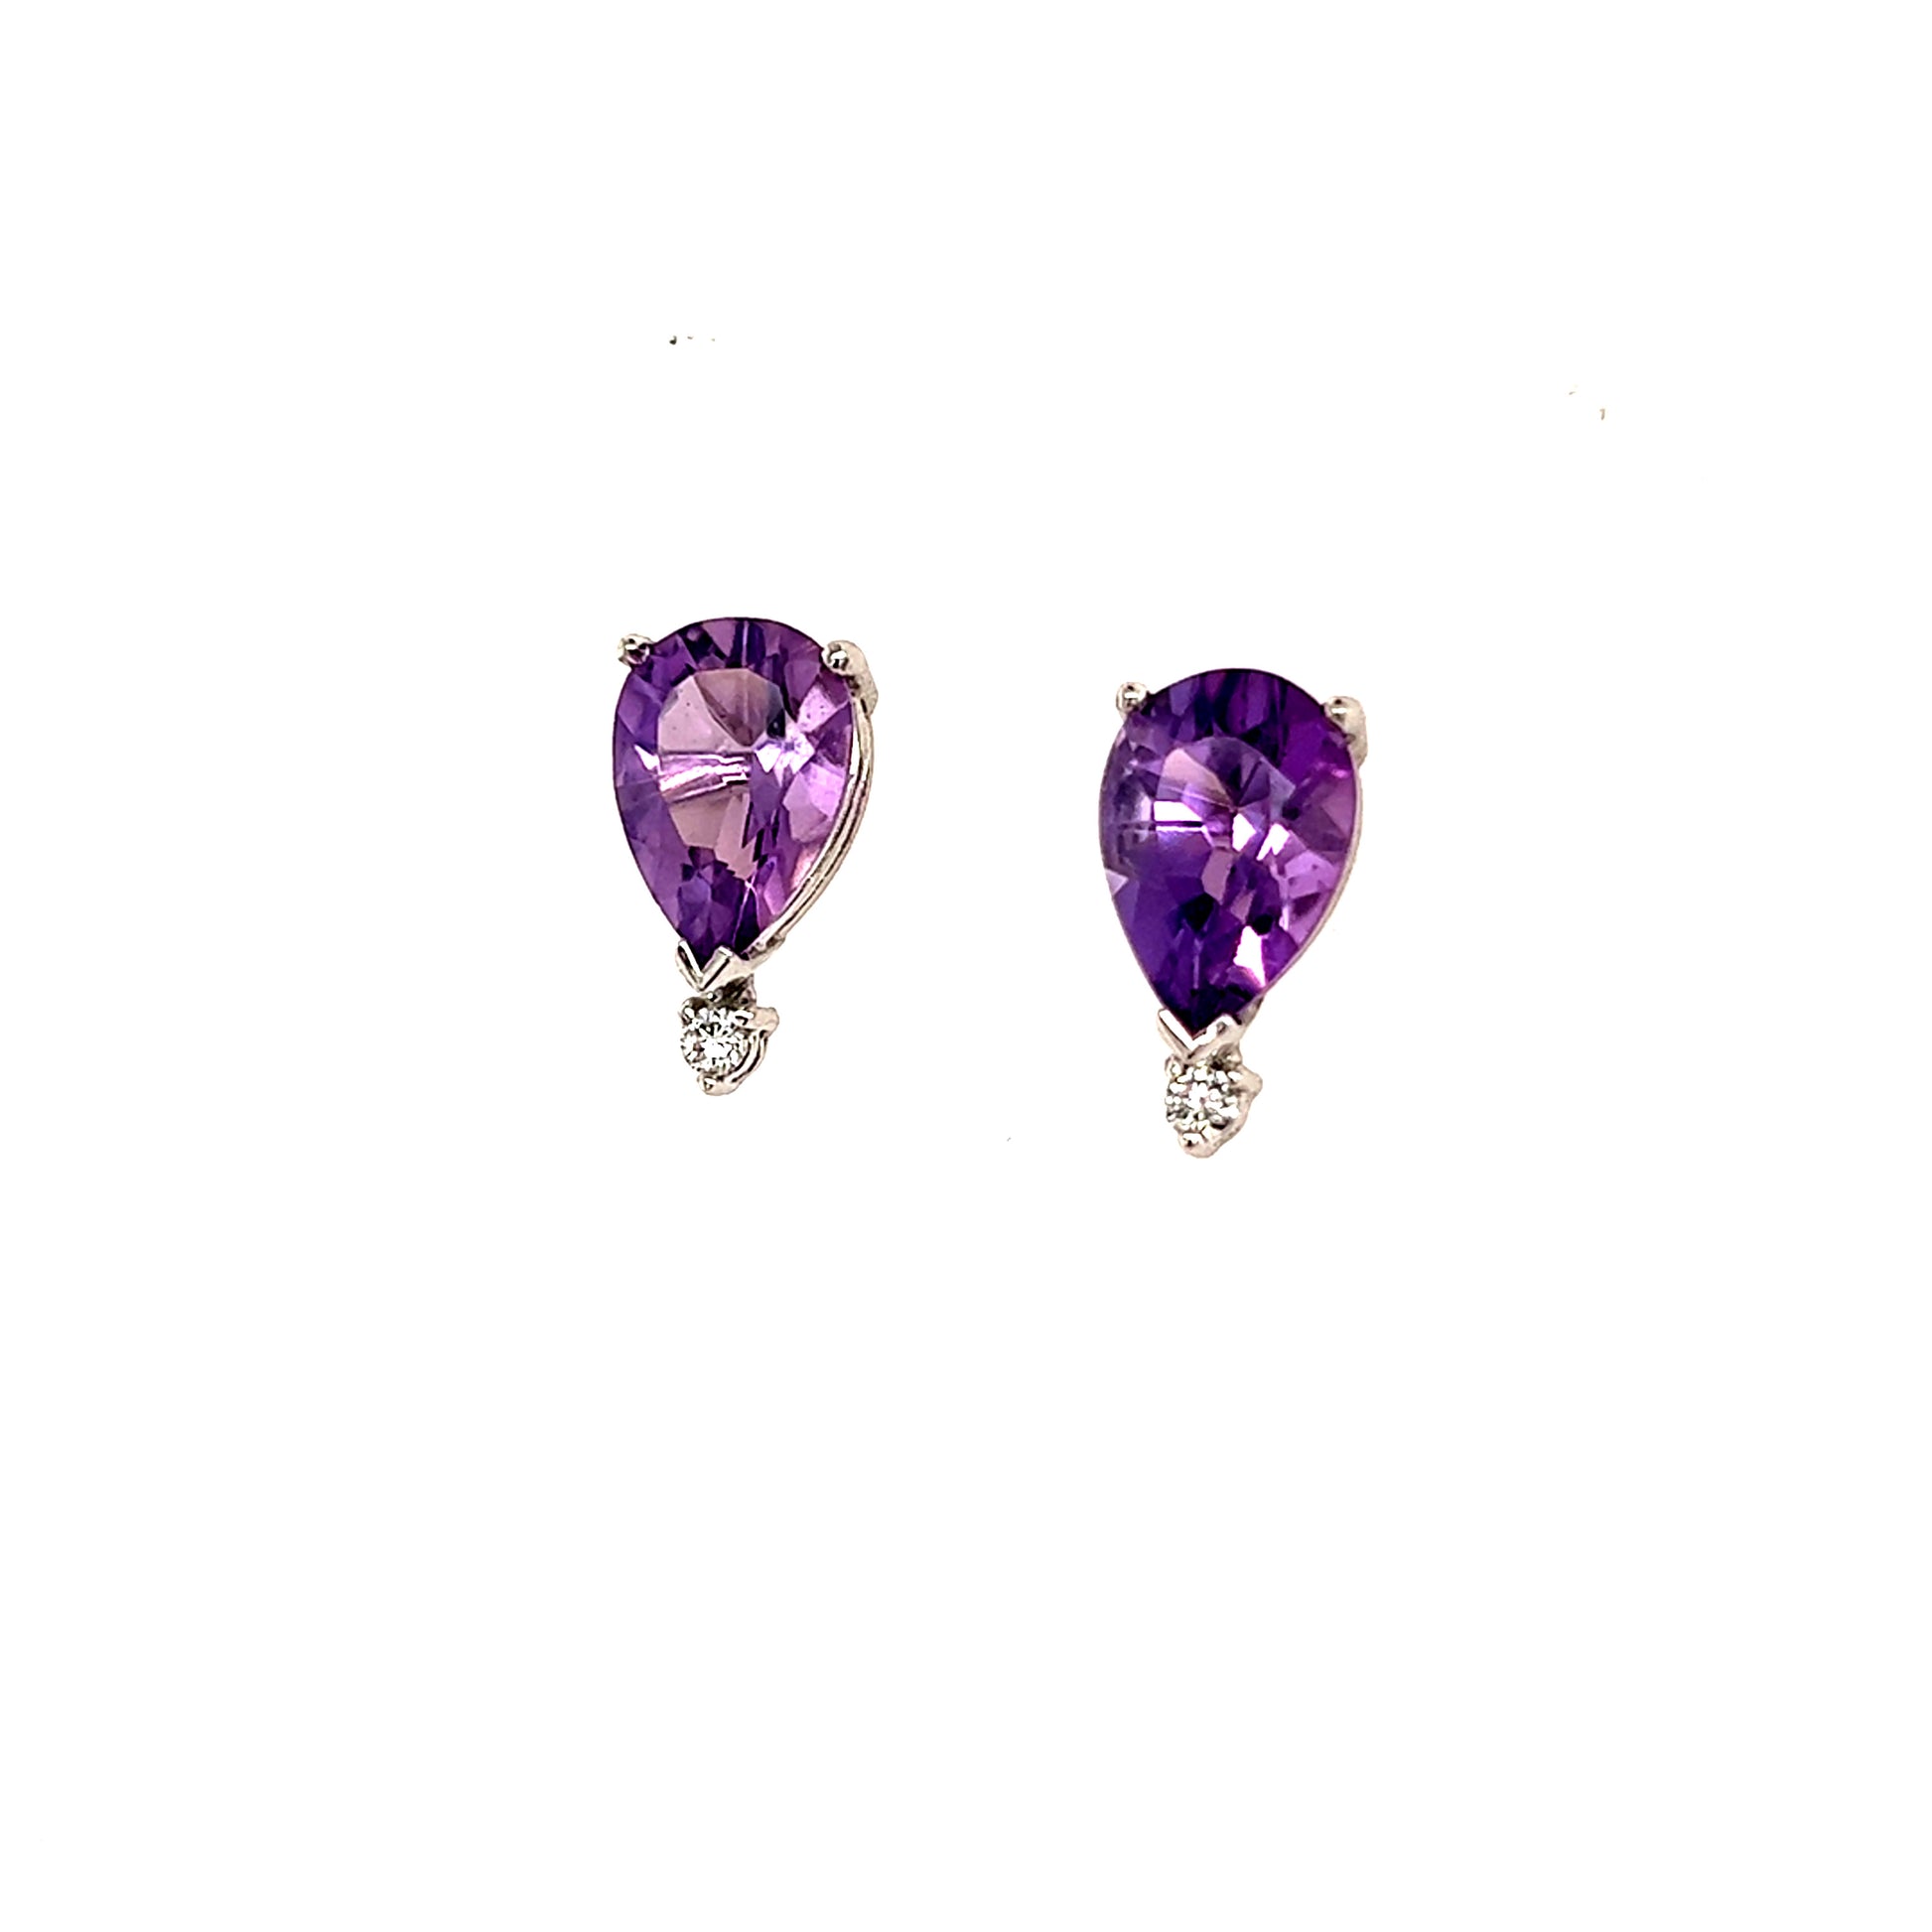 Natural Amethyst Diamond Earrings 14k Gold 3.71 TCW Certified $2,950 210754 - Certified Fine Jewelry